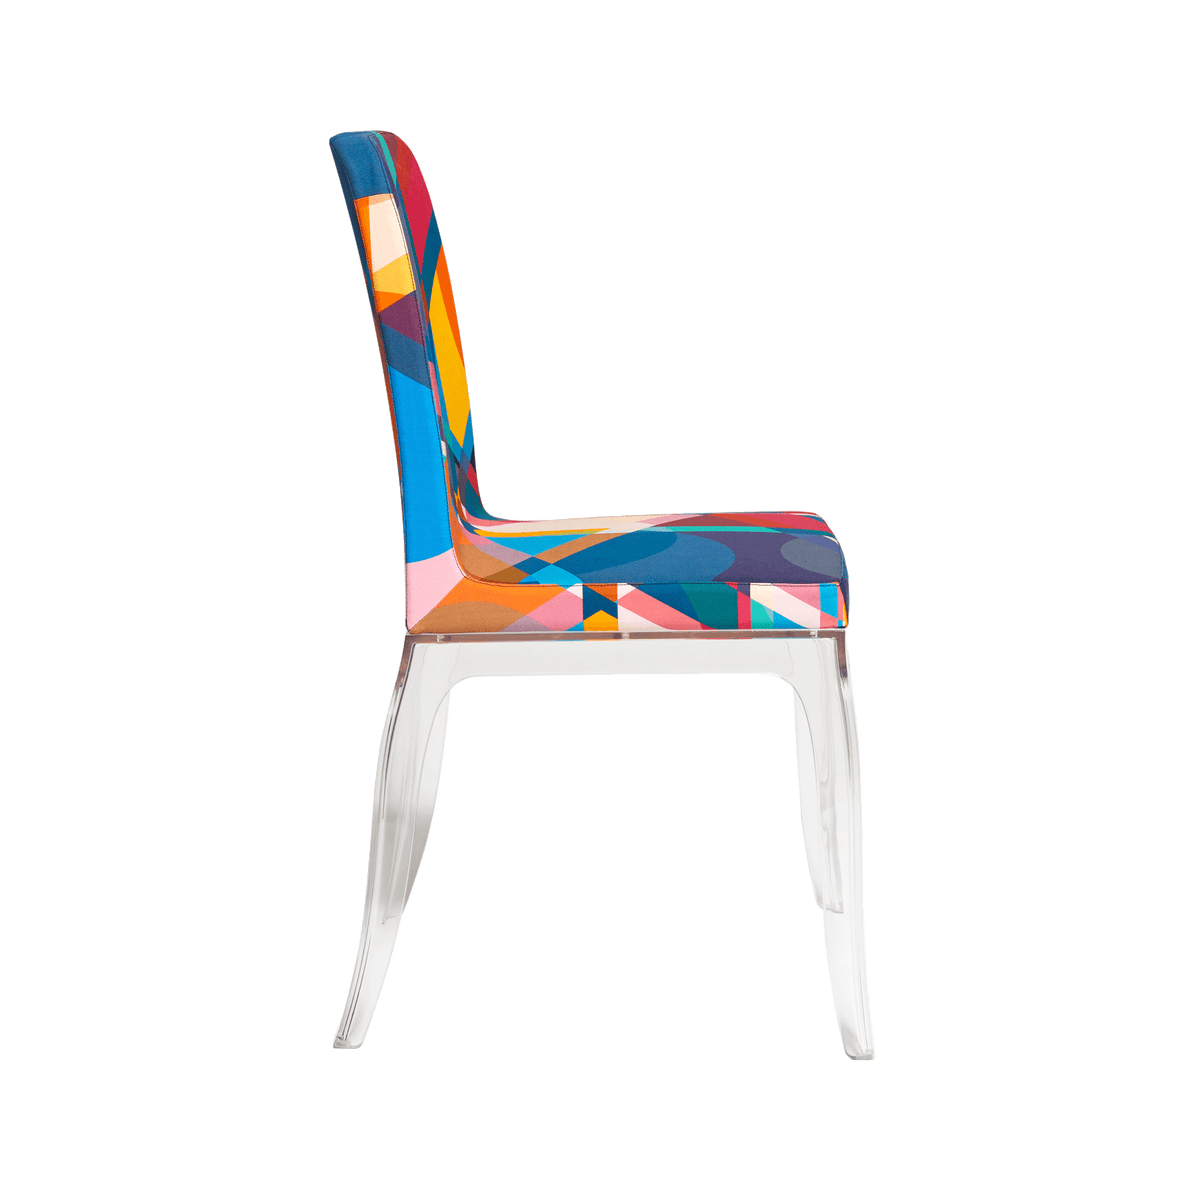 Kolekcja B.B składa się ze stołu jadalnego i siedzisk, które przypominają kolekcję "New Antiques" Wandersa, poszukując kontrastu pomiędzy ciężarem archetypowych form a lekkością przezroczystego plastiku.  Krzesło B.B, w pełnym stylu Marcela Wandersa, ma amforową nogę jak Louis Philippe i dlatego wymaga, aby oparcie i siedzisko były tapicerowane wielobarwną tkaniną jaquard.